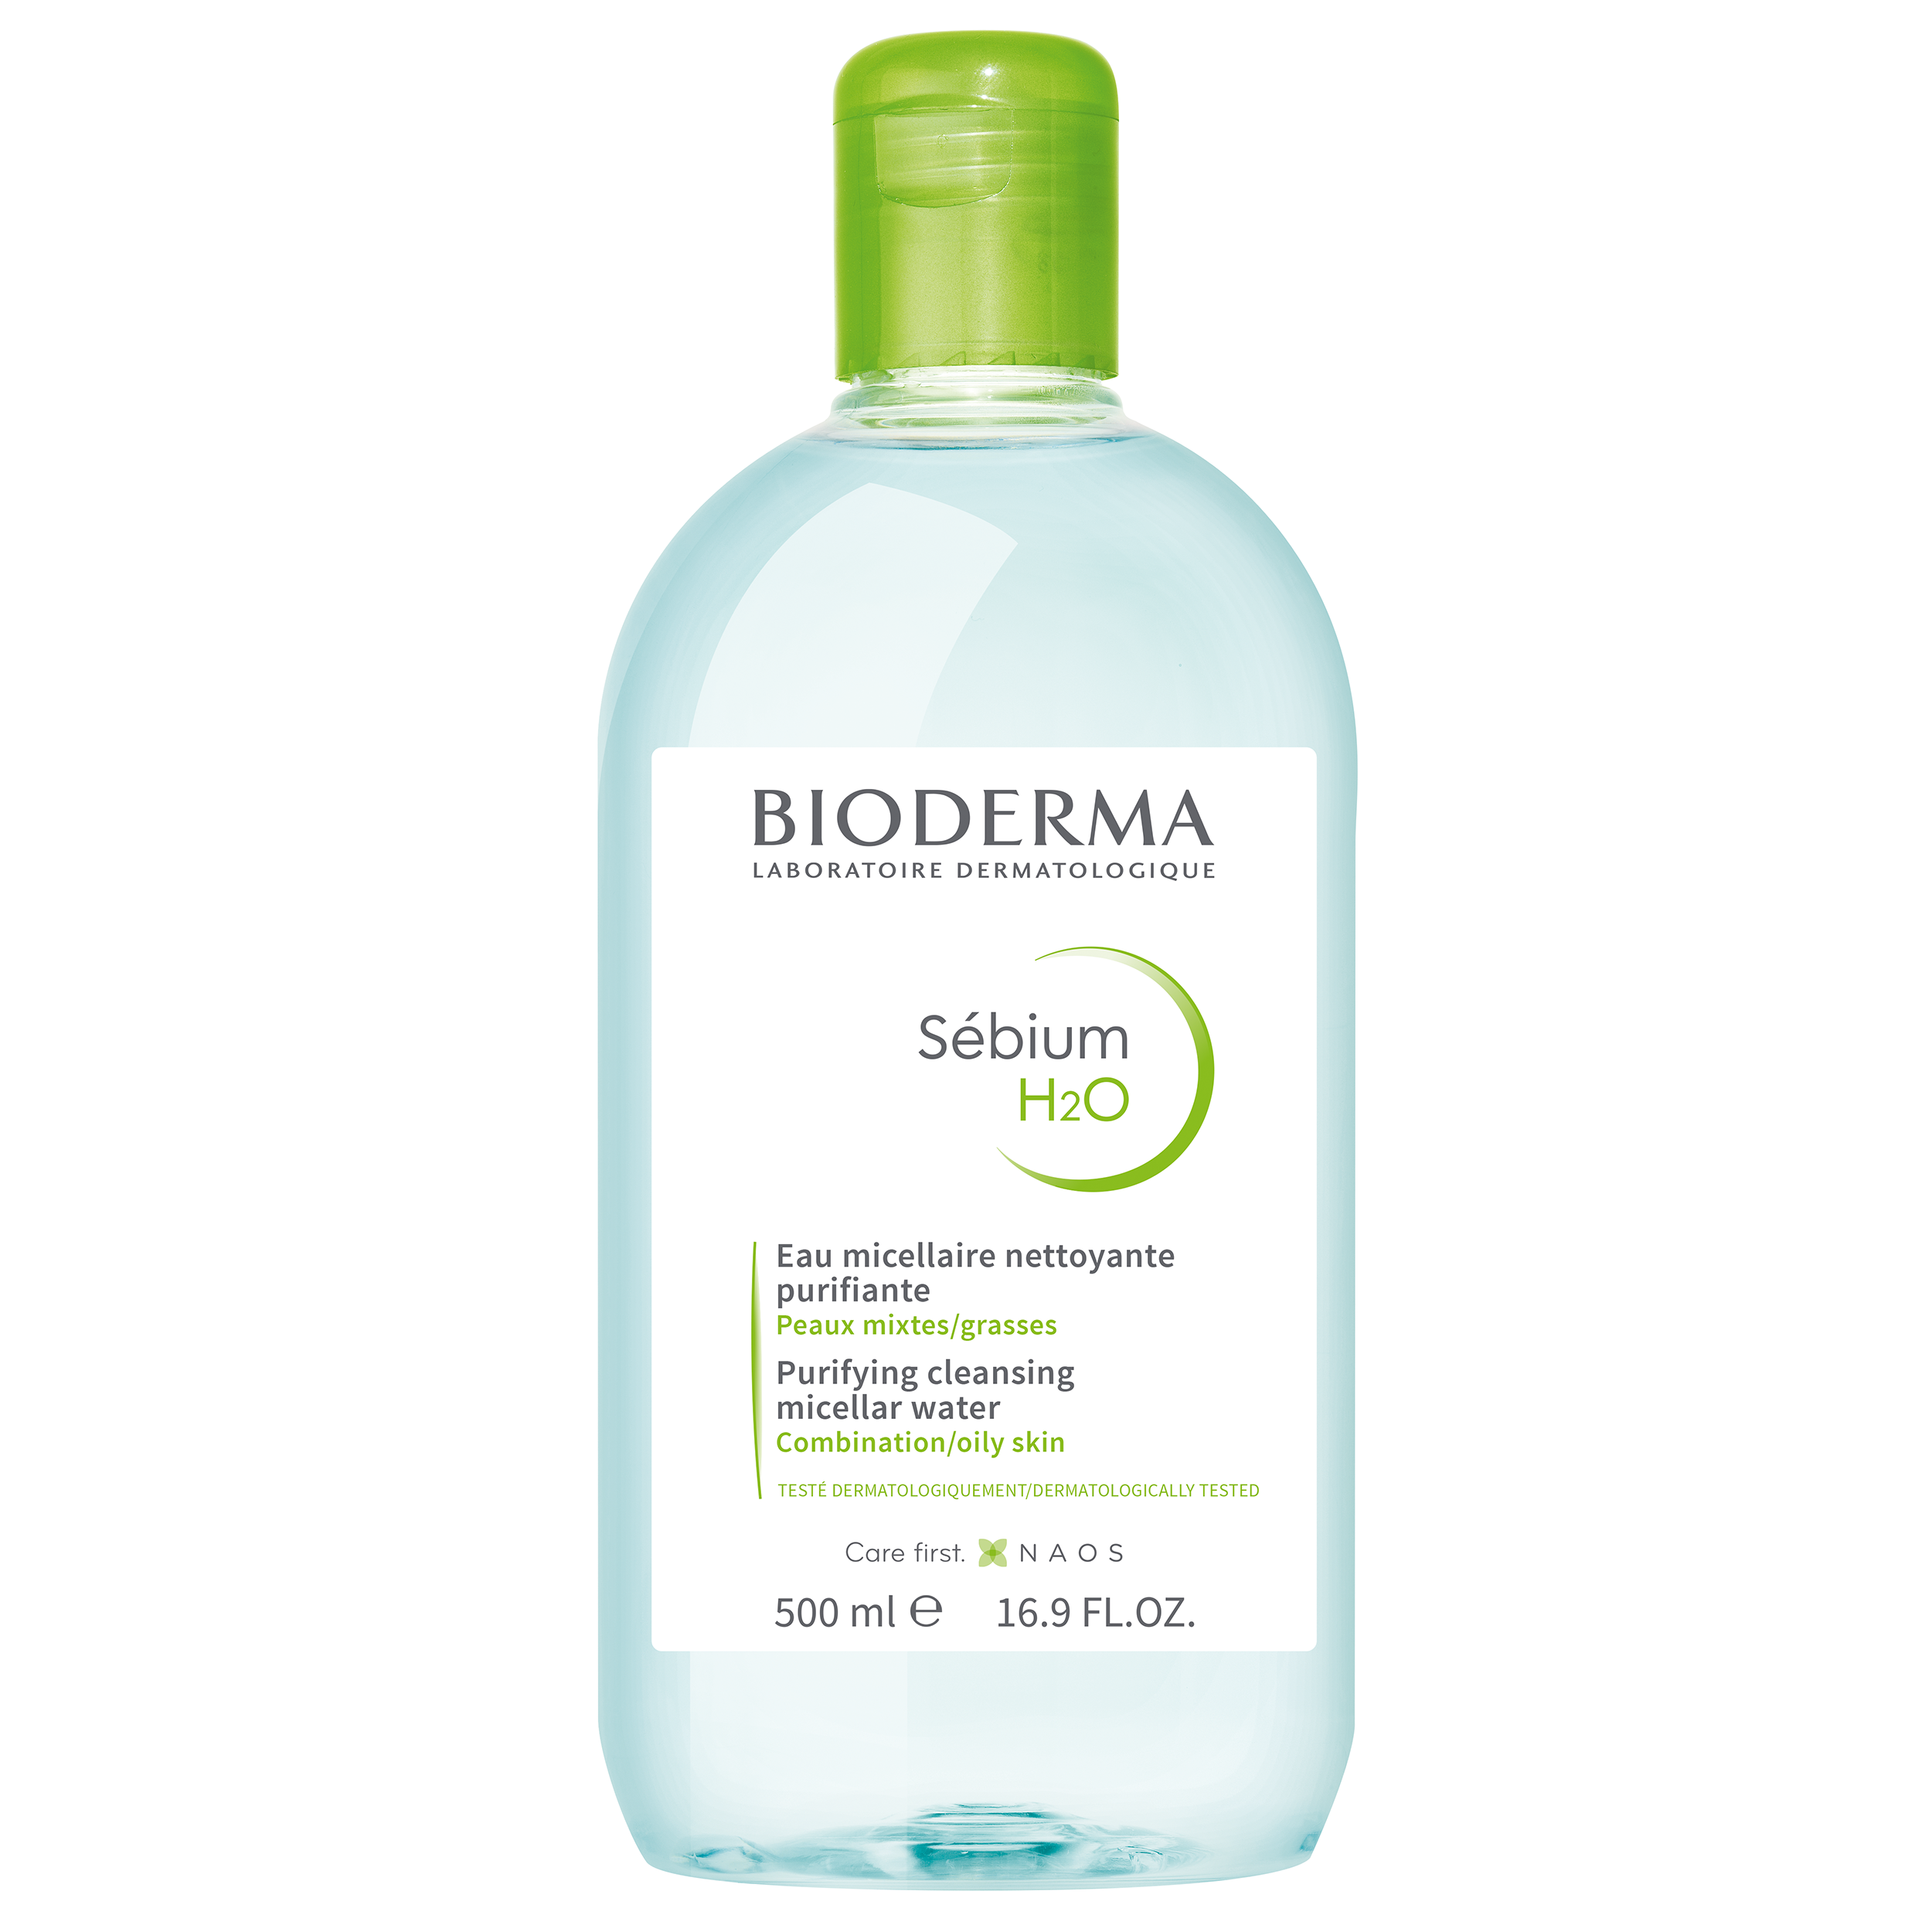 Bioderma Bioderma Sebium H2O Purifying Cleansing Micellar Water Νερό Καθαρισμού & Ντεμακιγιάζ Προσώπου - Ματιών, Κατάλληλο για Μικτό - Λιπαρό Δέρμα 500ml